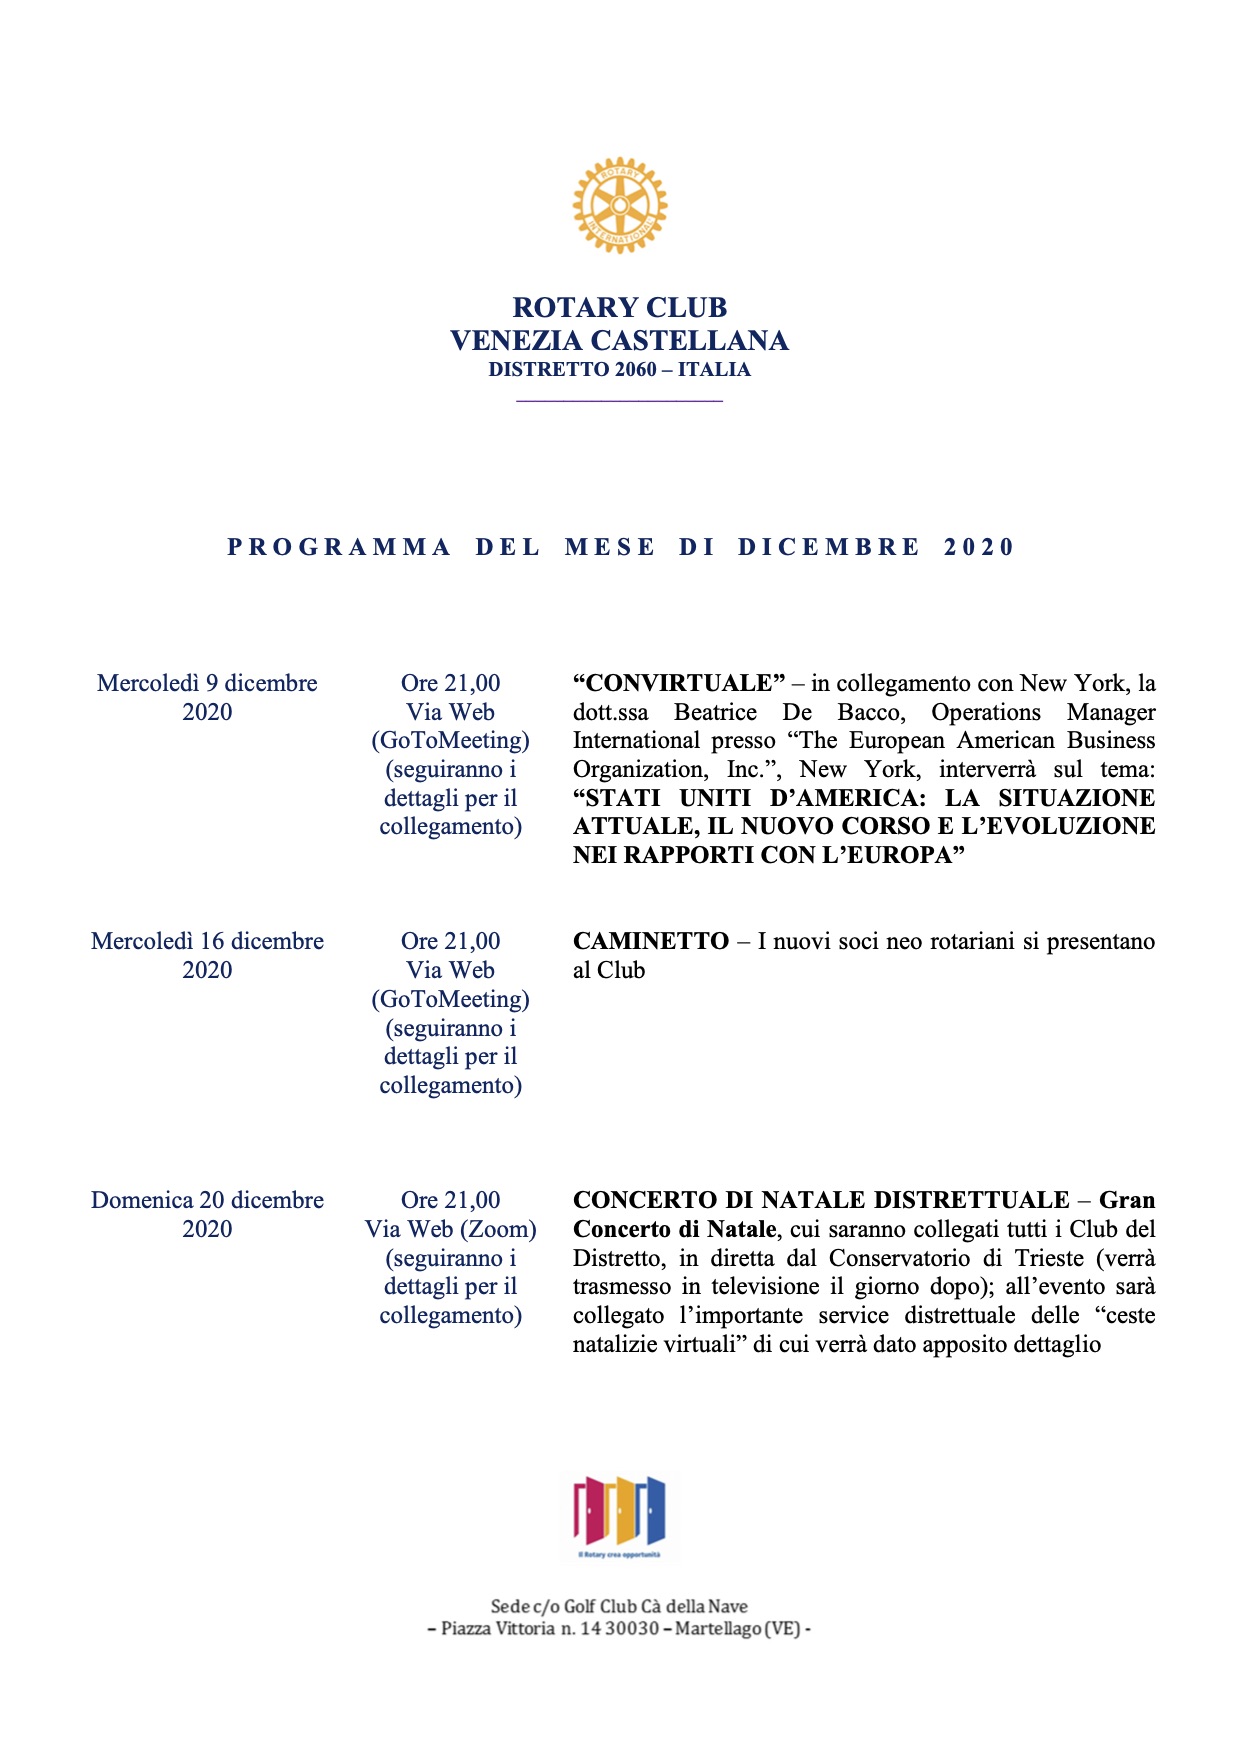 RC Venezia Castellana Programma mese di dicembre 2020